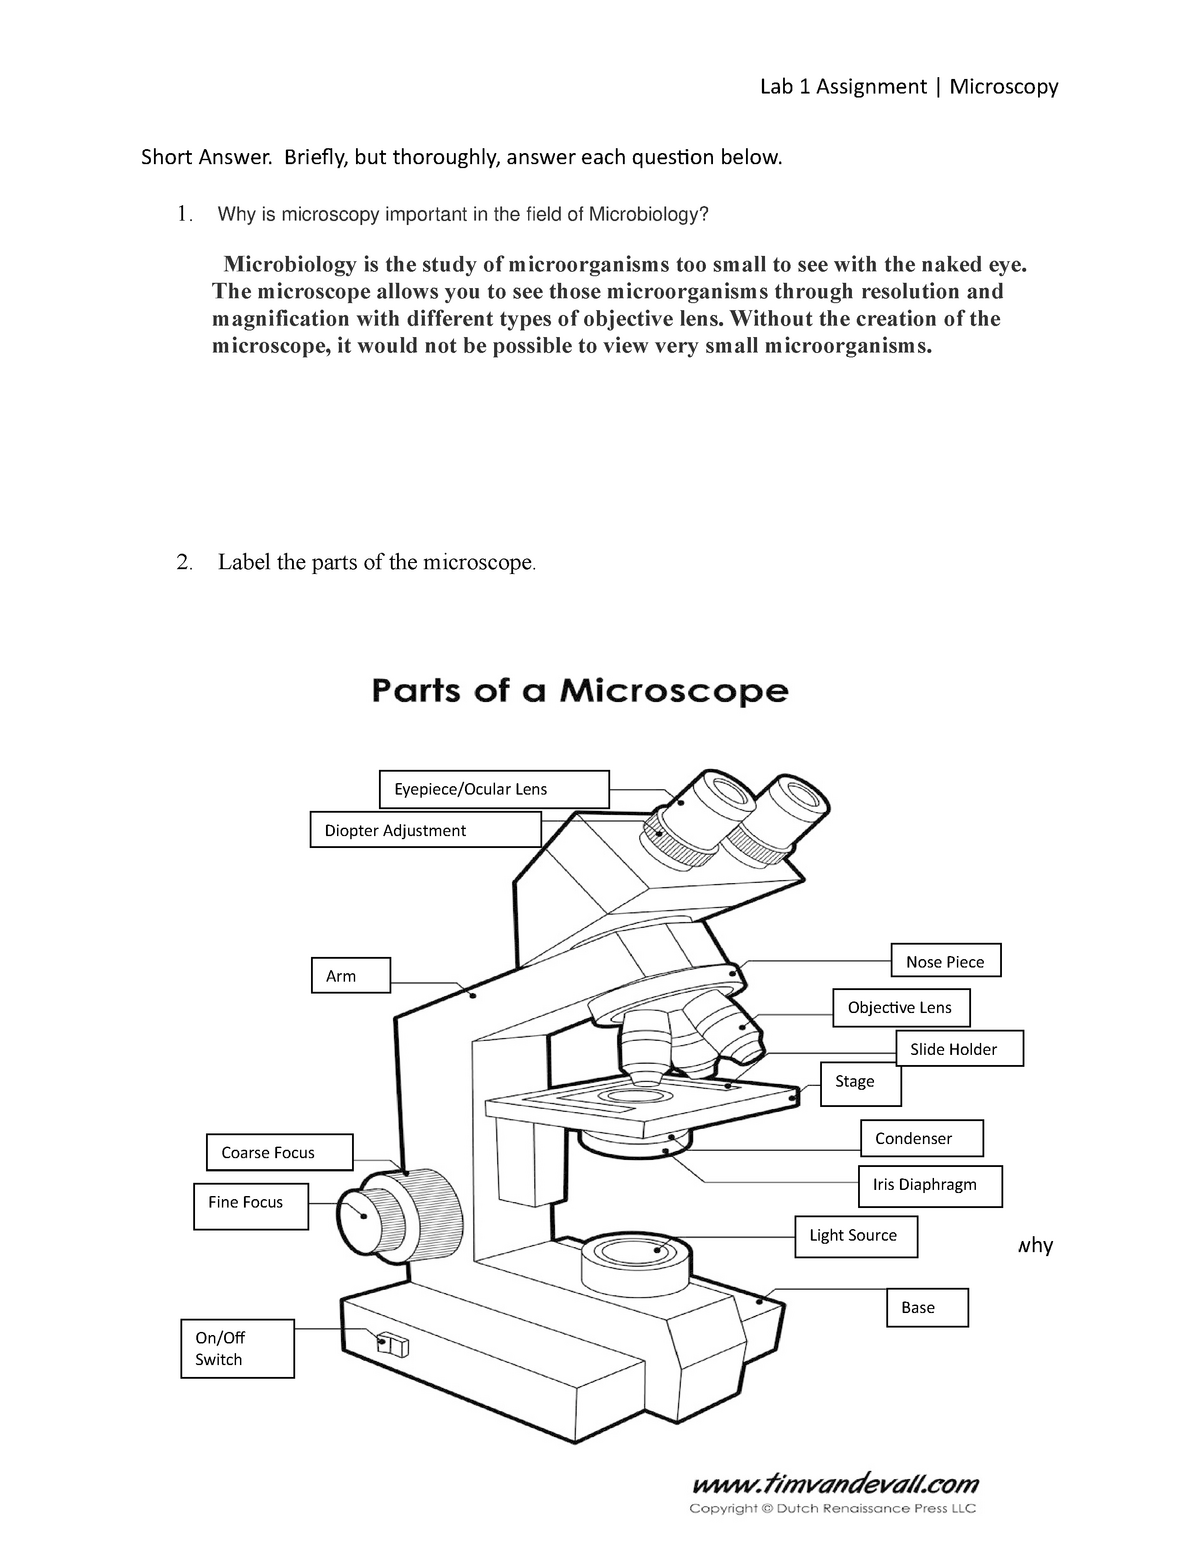 Lab 1 Assignment Microscopy - Lab 1 Assignment | Microscopy Short ...